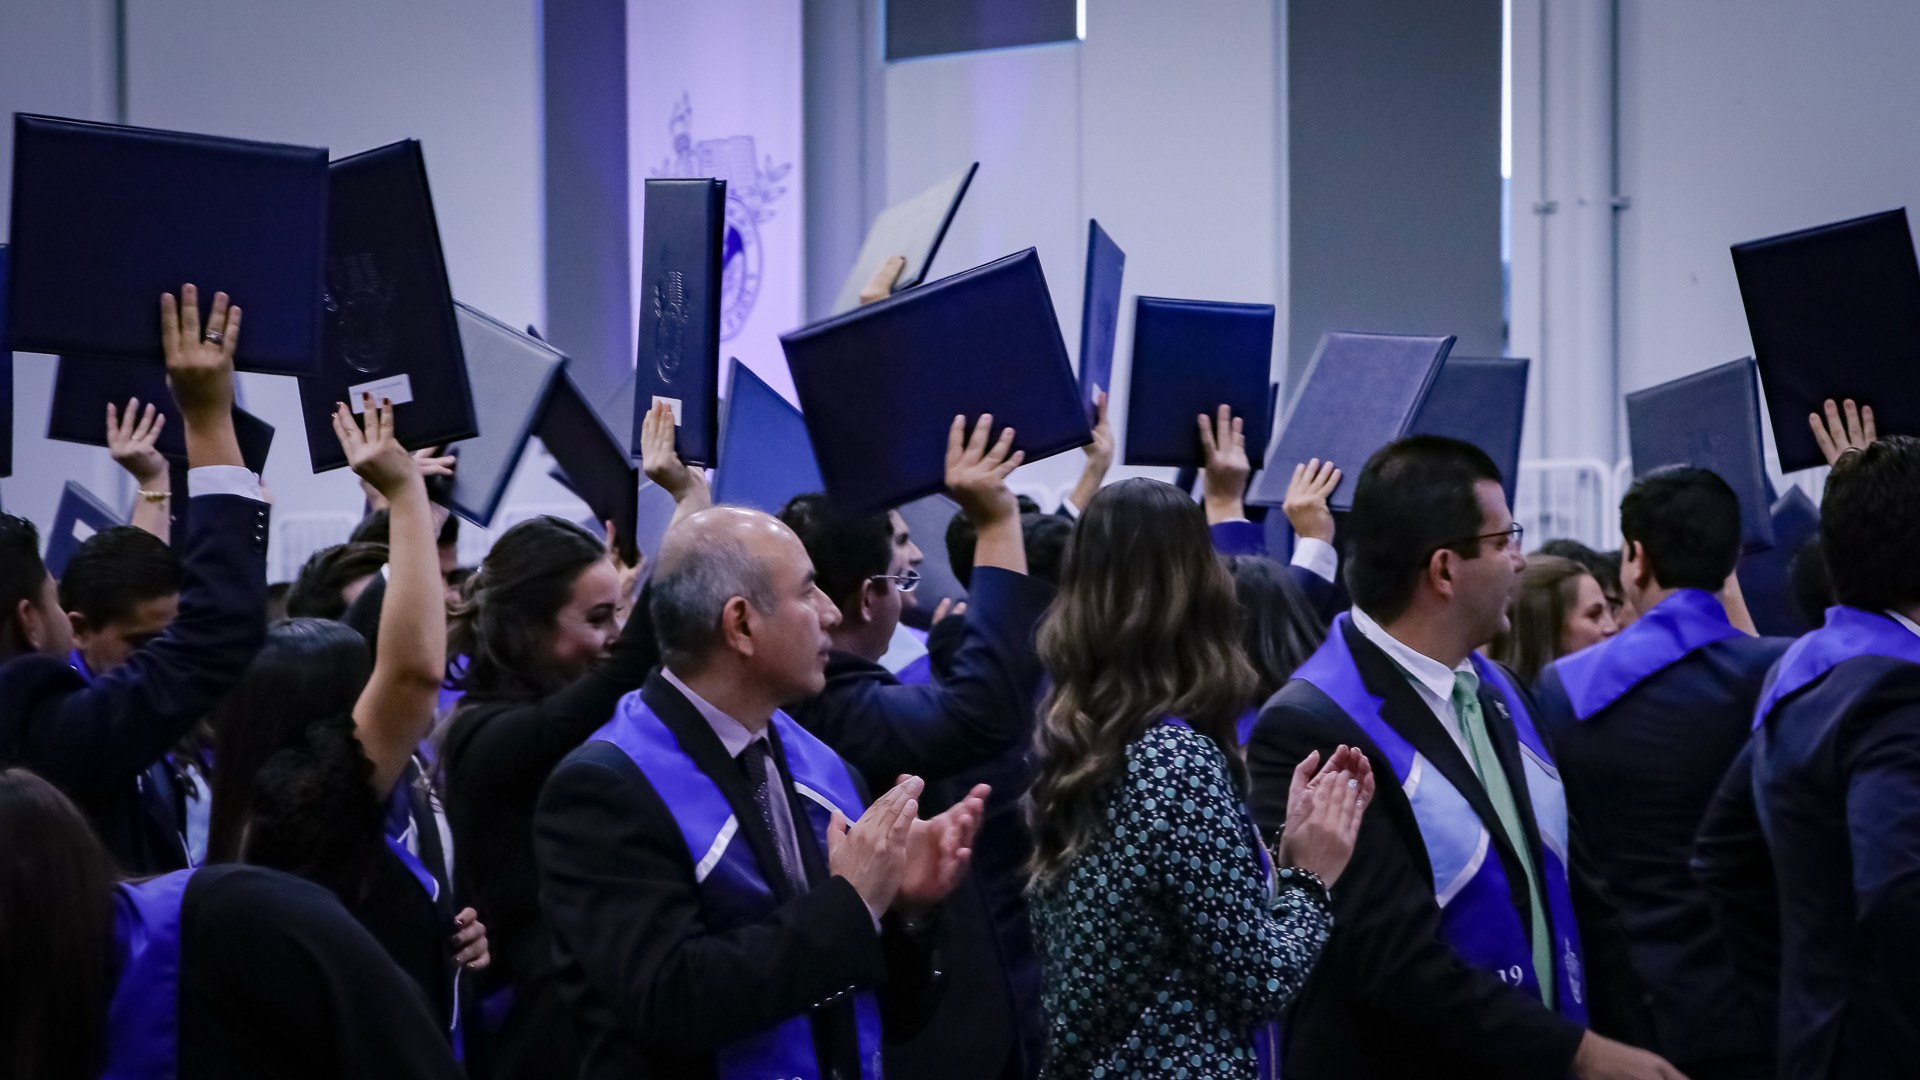 Graduación, campus León Diciembre 2019